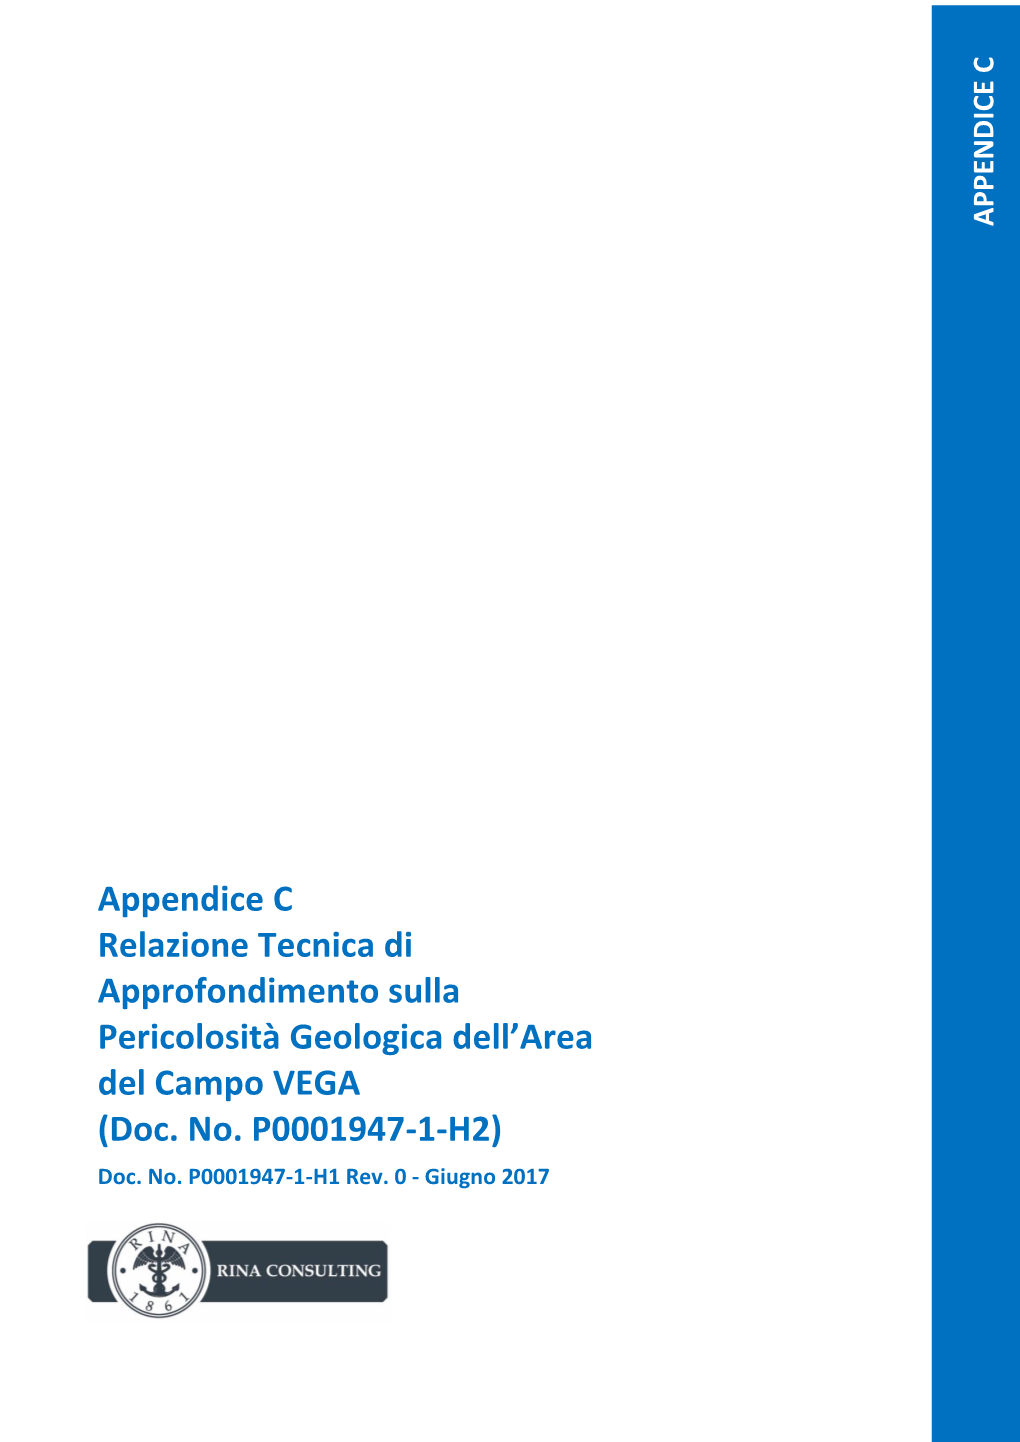 Appendice C Relazione Tecnica Di Approfondimento Sulla Pericolosità Geologica Dell’Area Del Campo VEGA (Doc